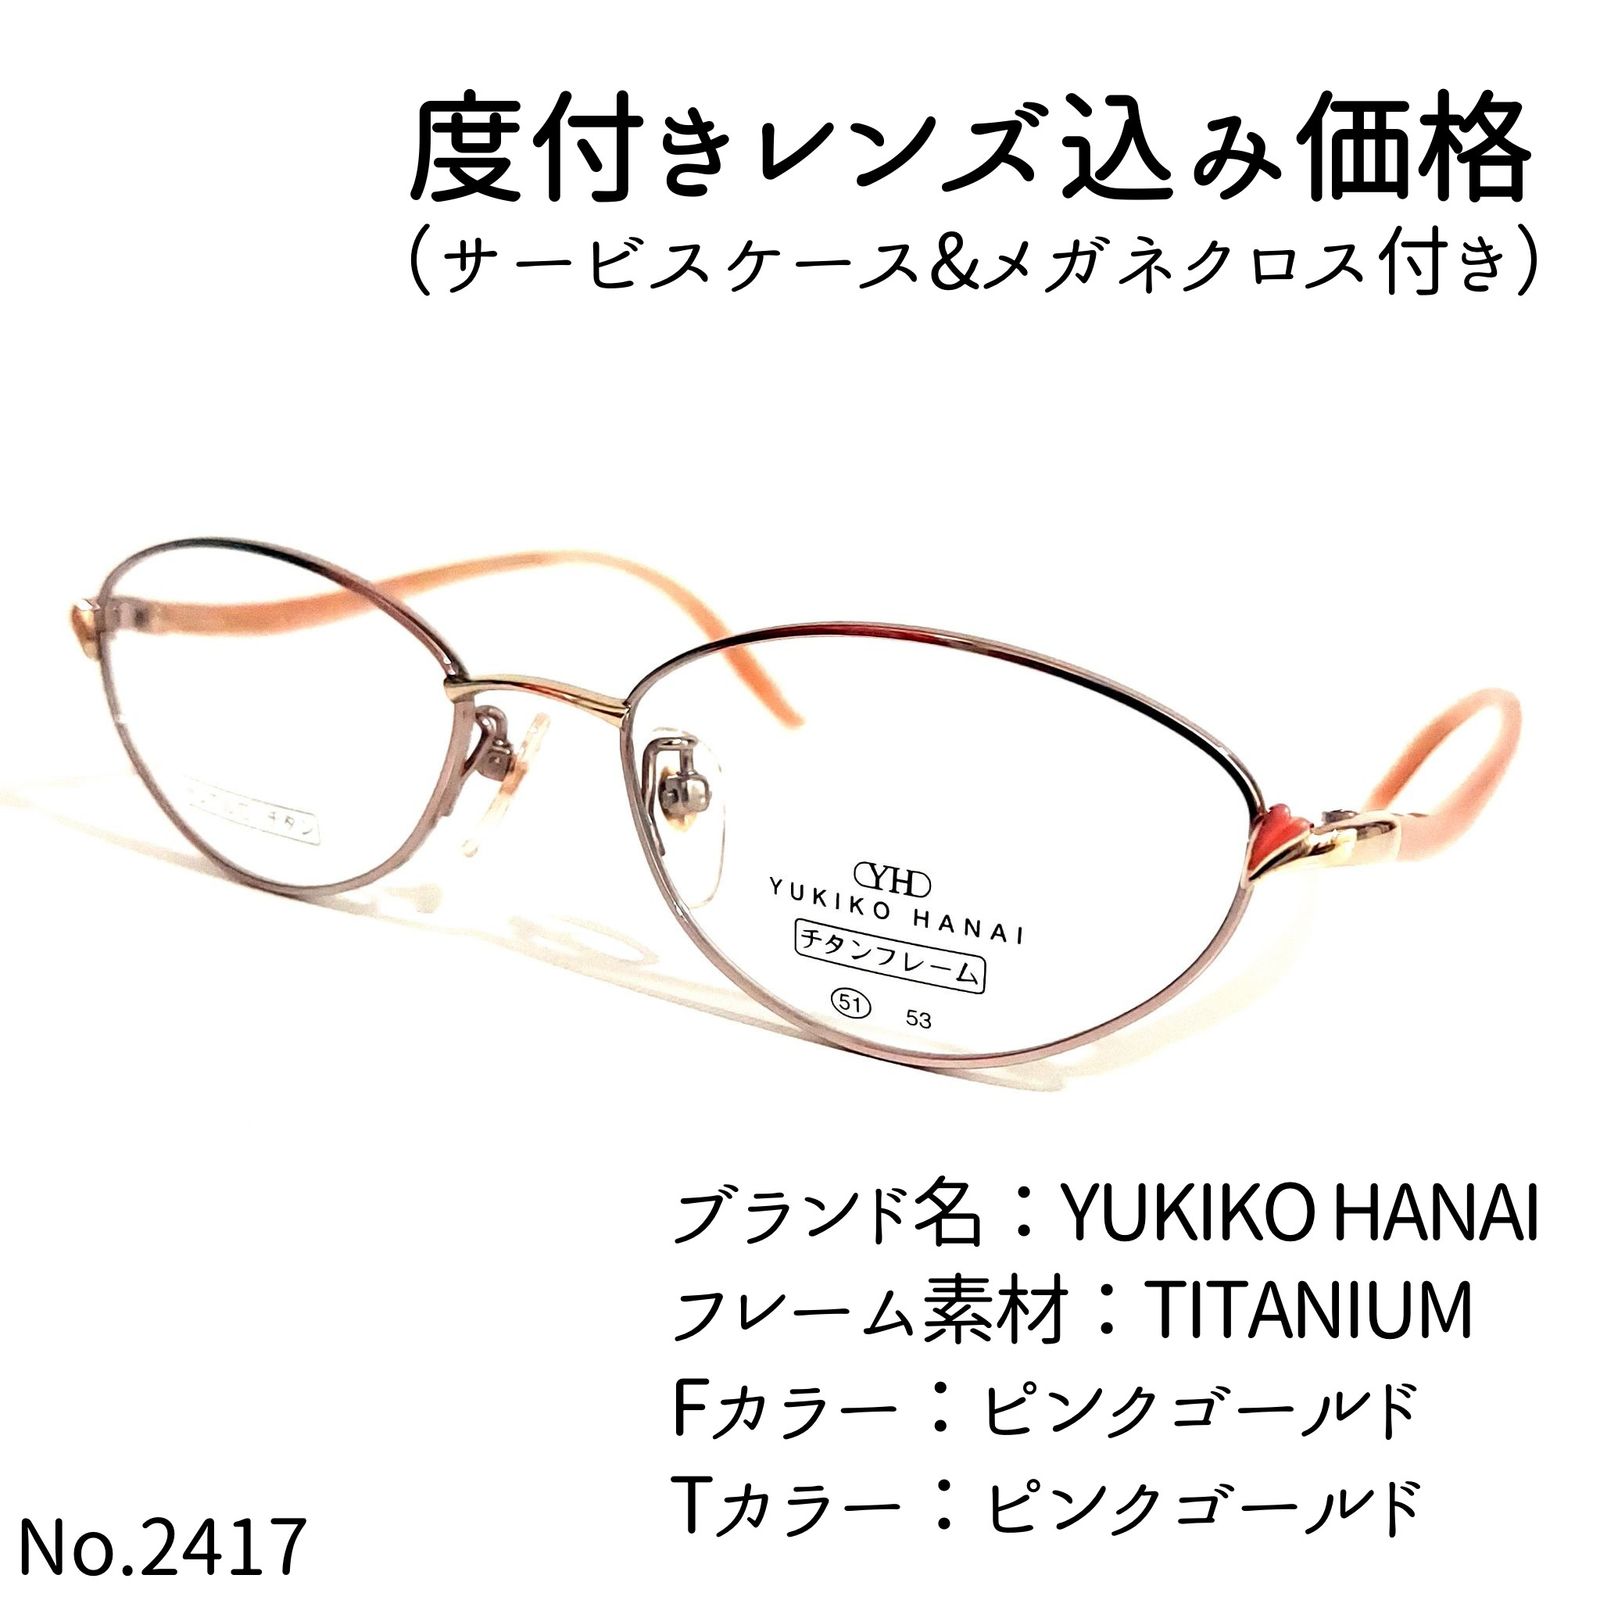 No.2417+メガネ YUKIKO HANAI【度数入り込み価格】-